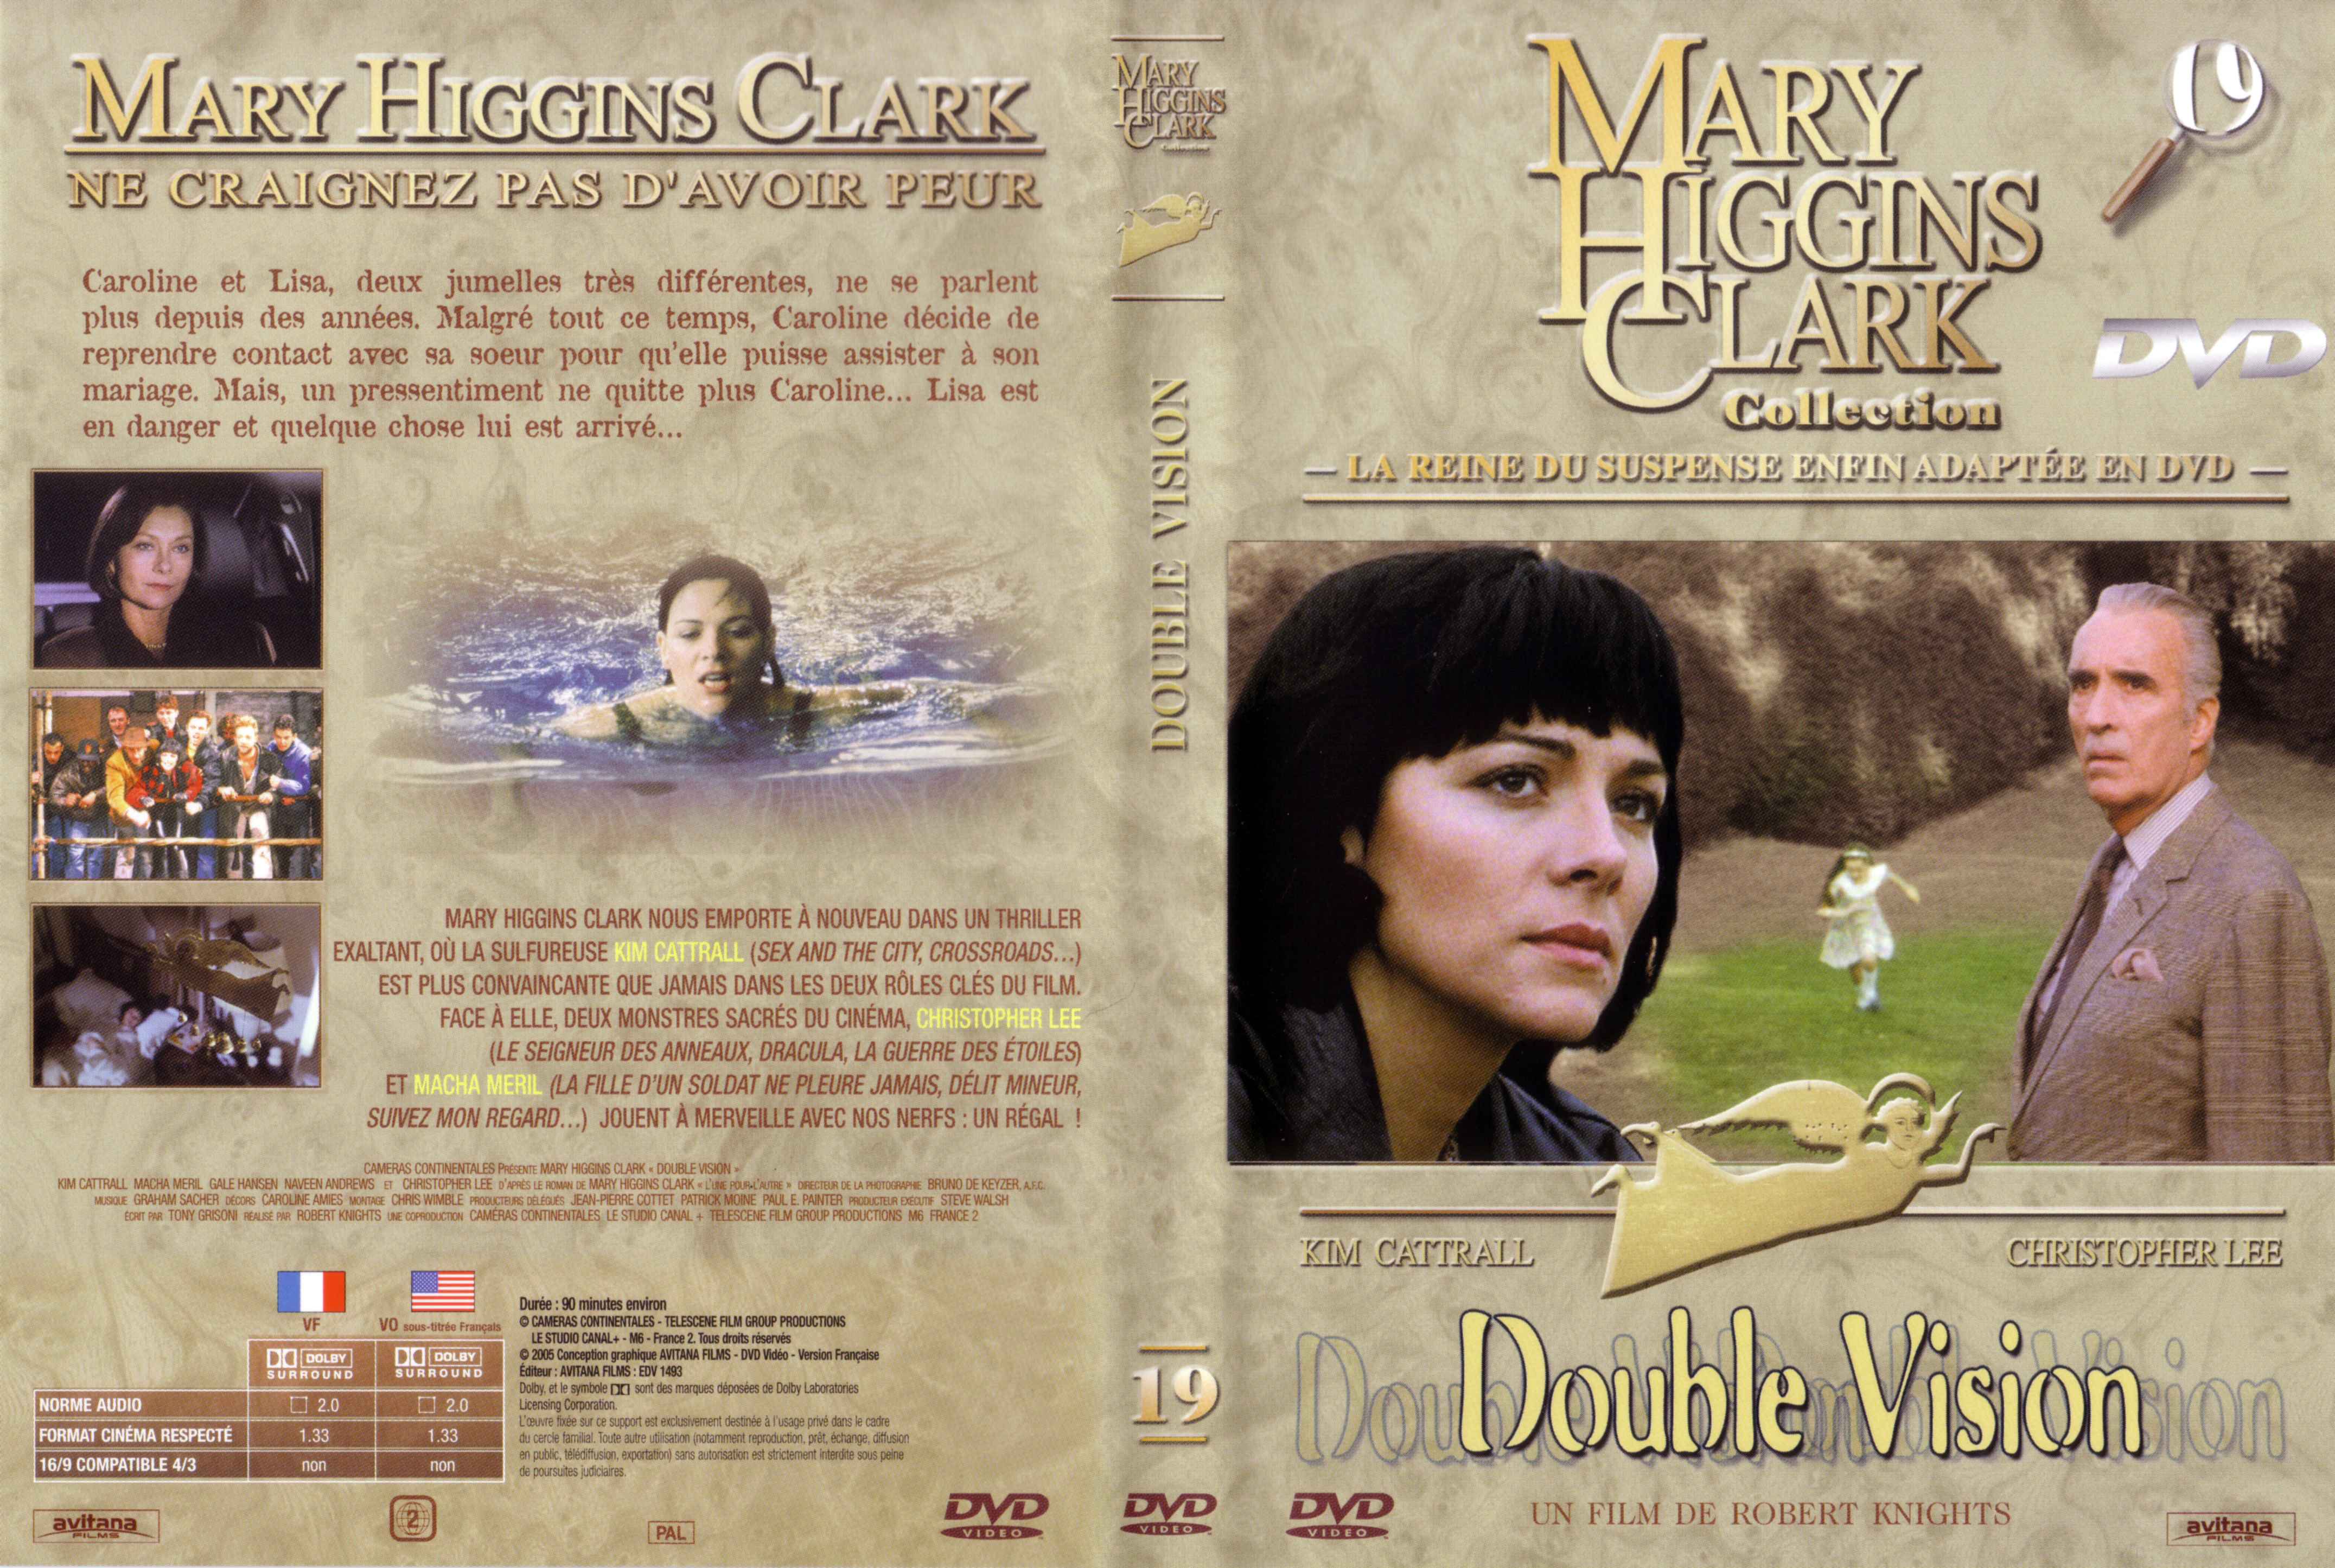 Jaquette DVD de Mary Higgins Clark vol 19 - Double vision - Cinéma Passion